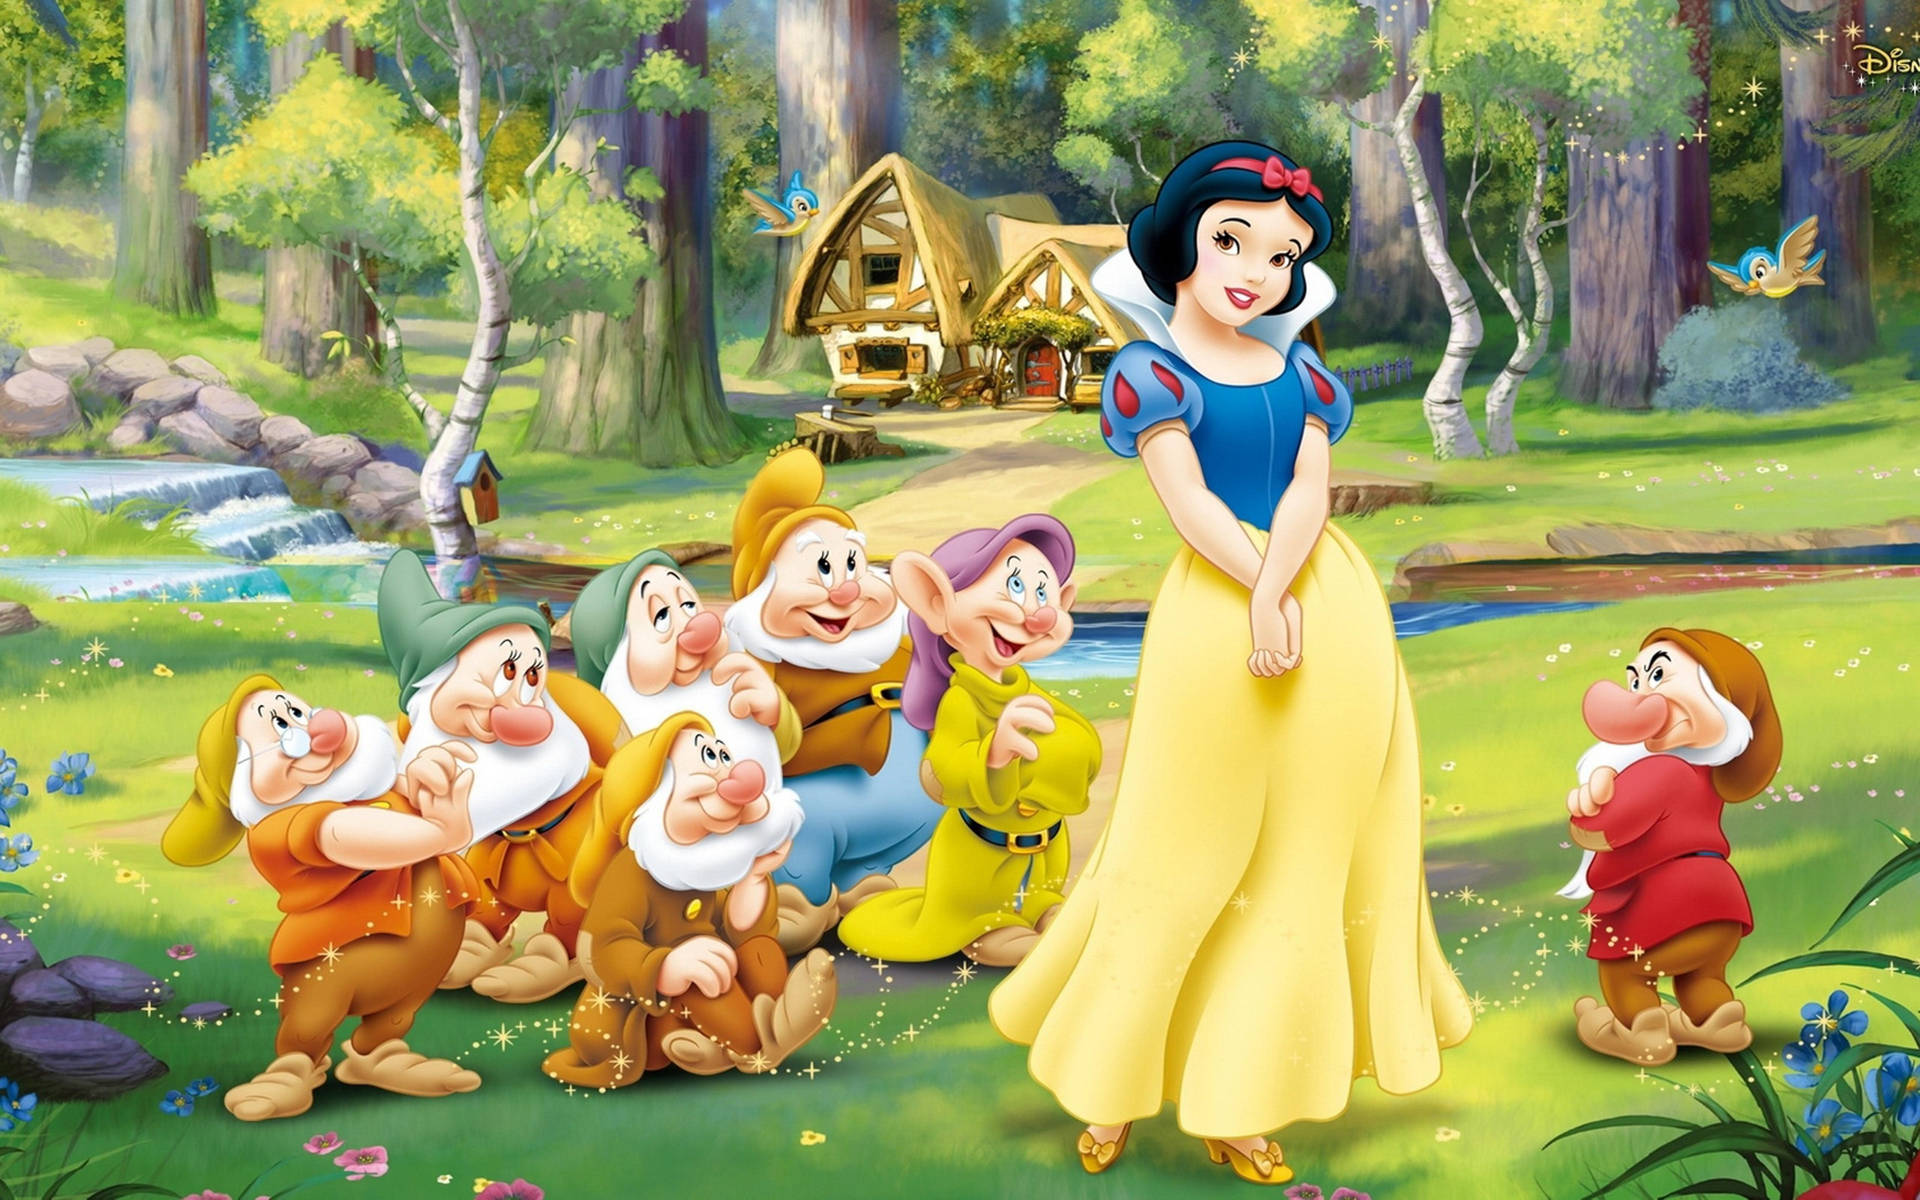 Disney Princess Snow White With Dwarfs Background